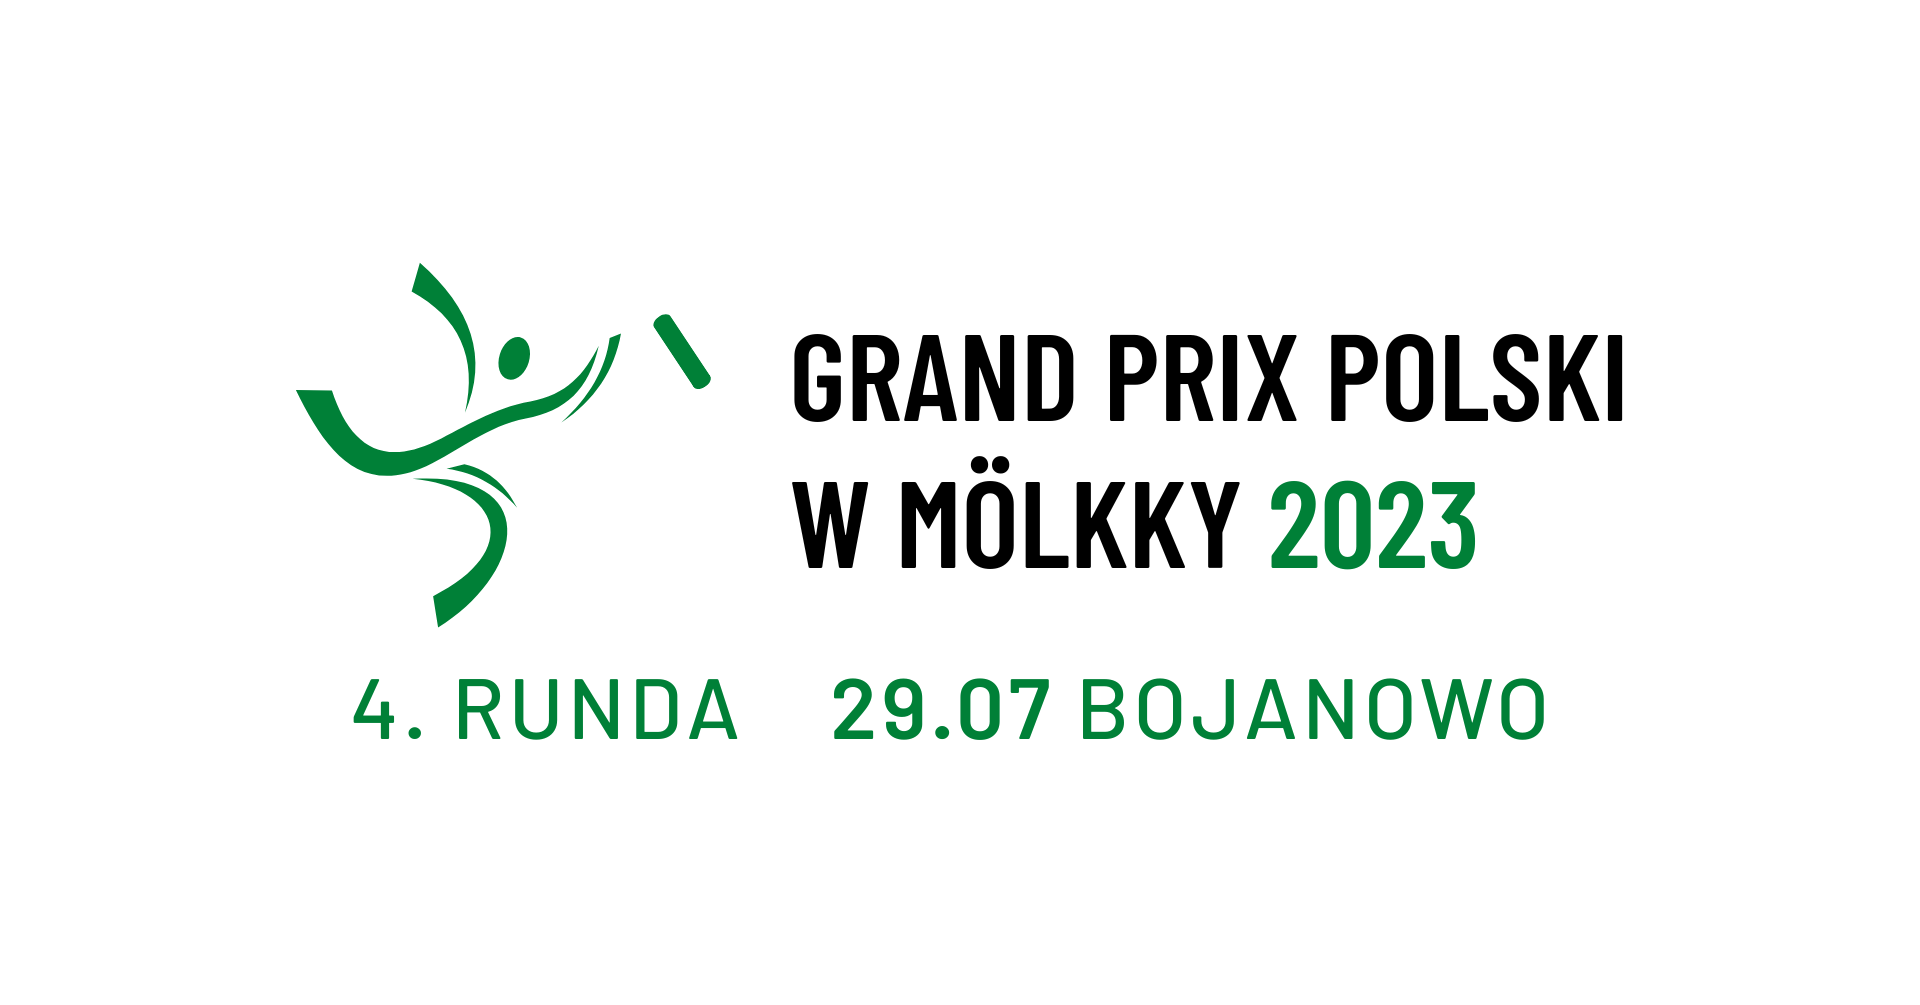 Grand Prix of Poland - event 4/5